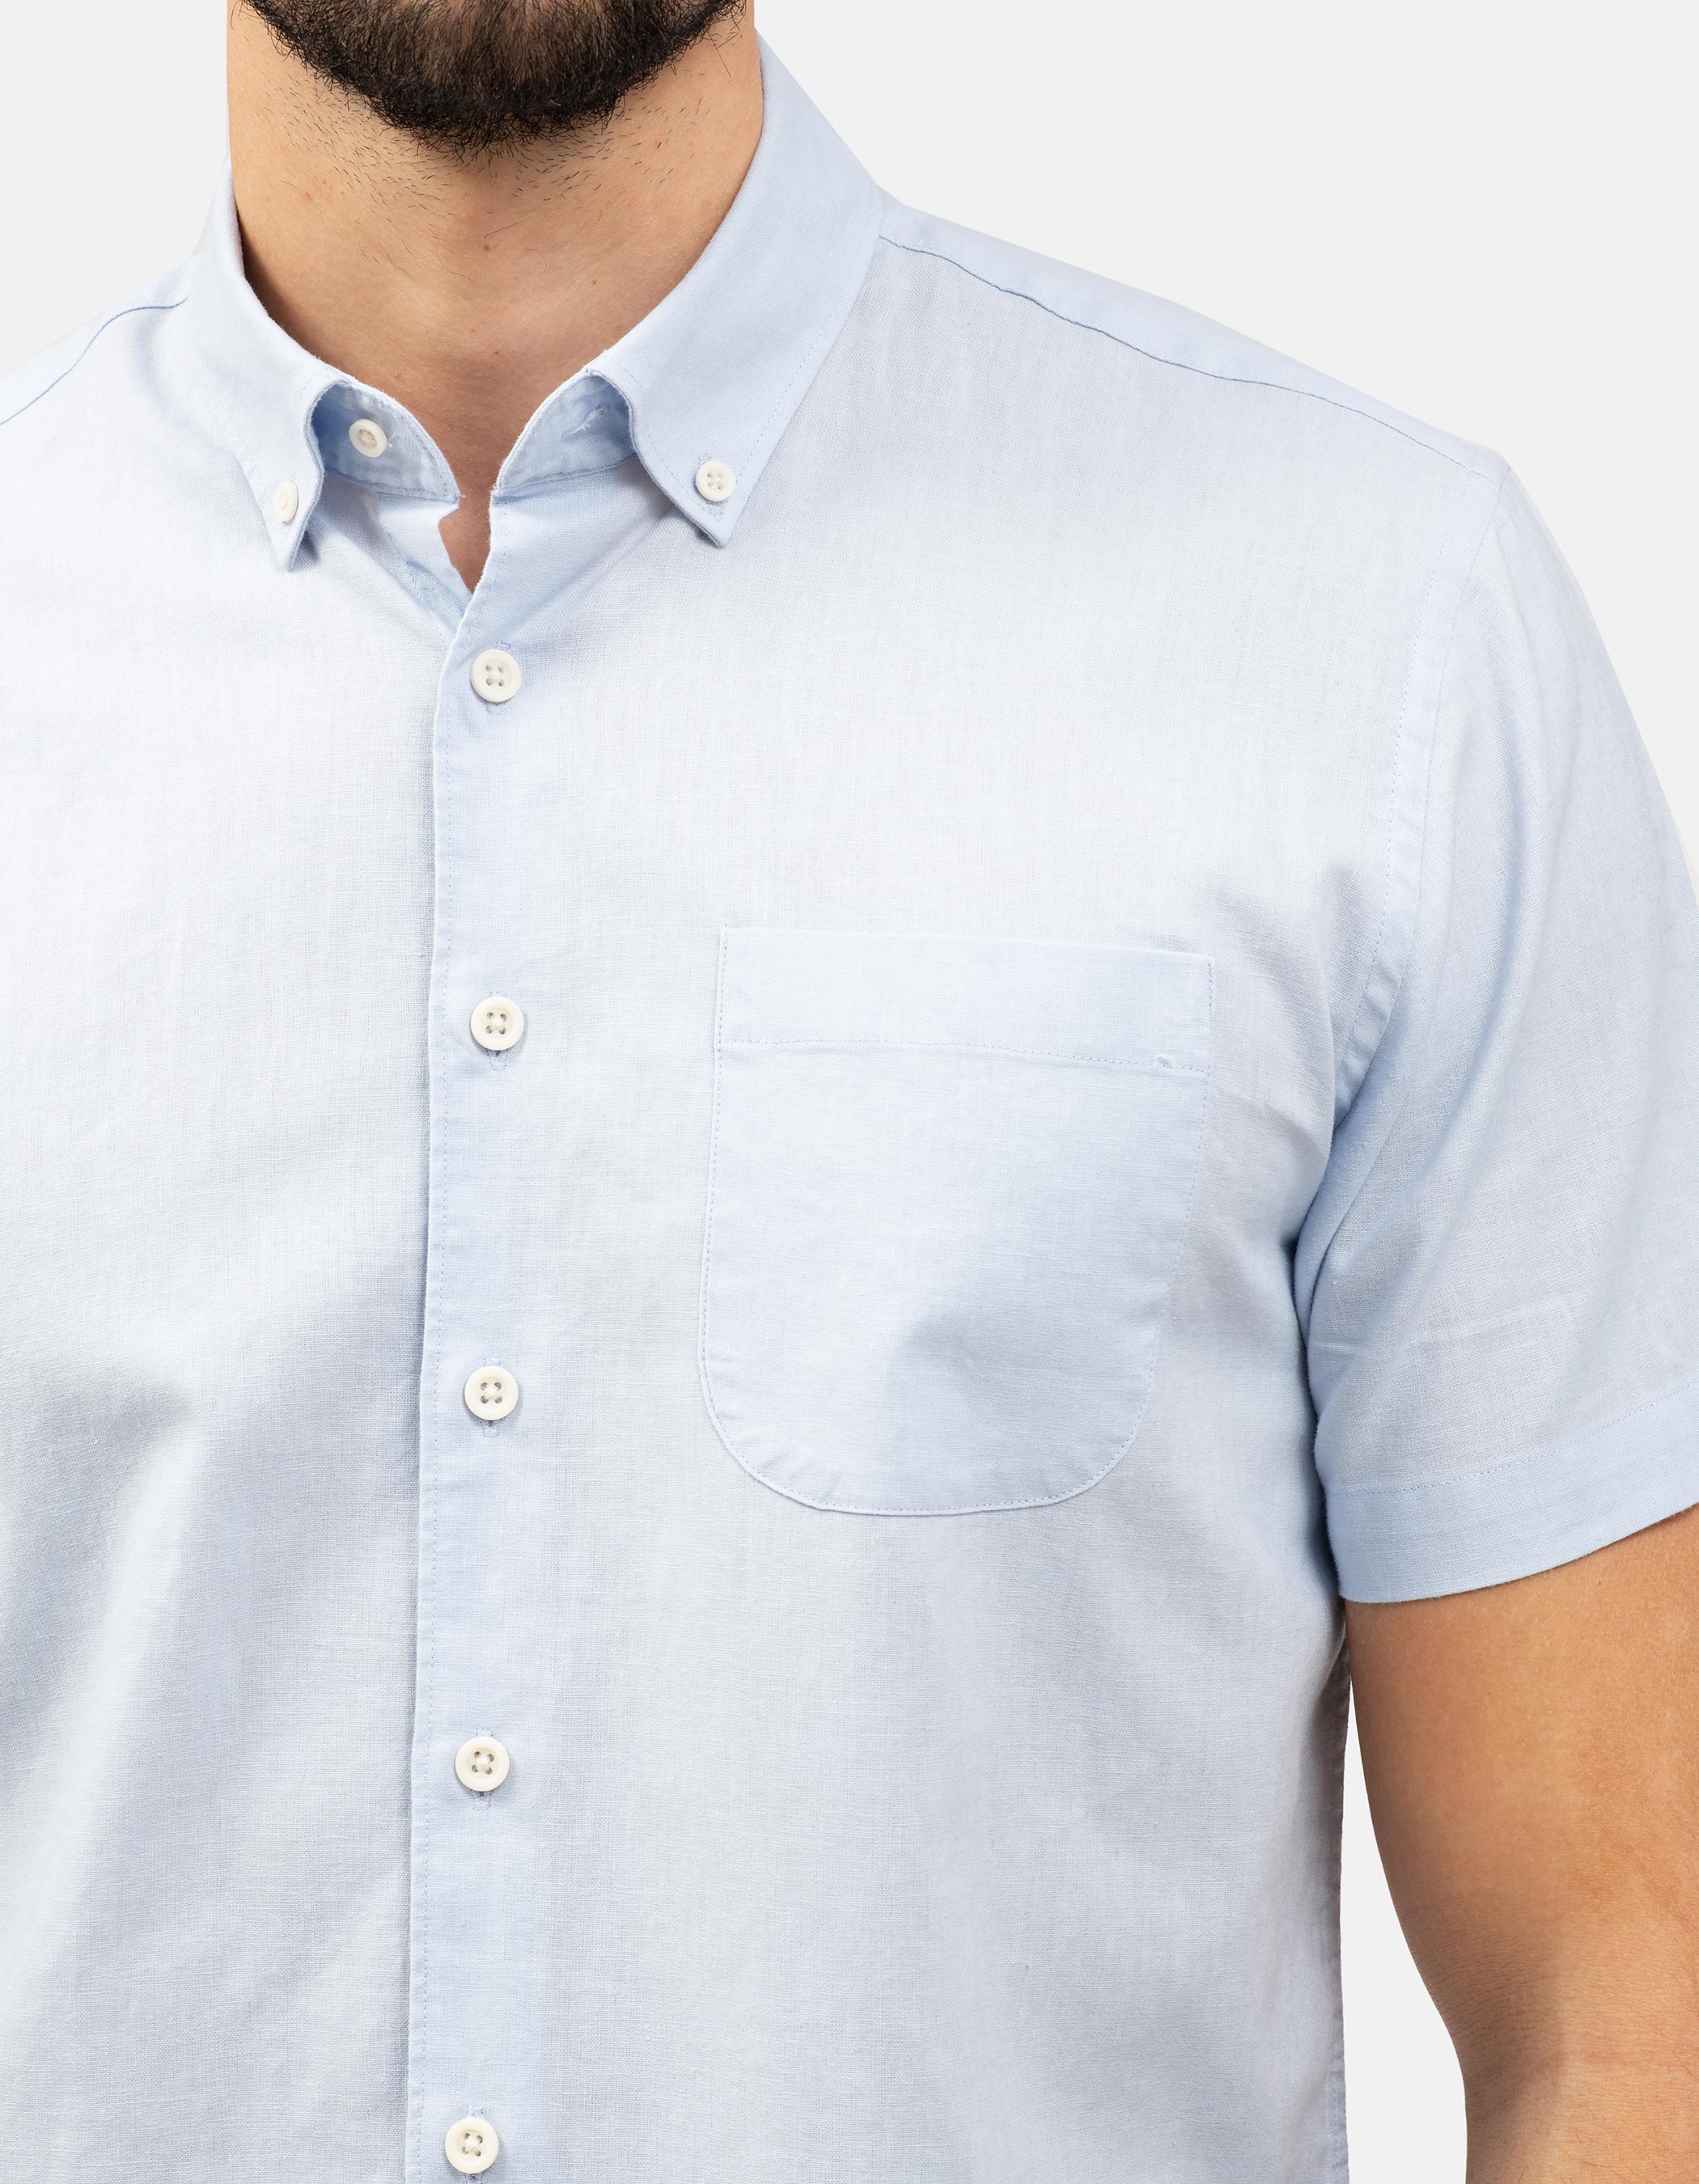 Linen and cotton short sleeve shirt. 2